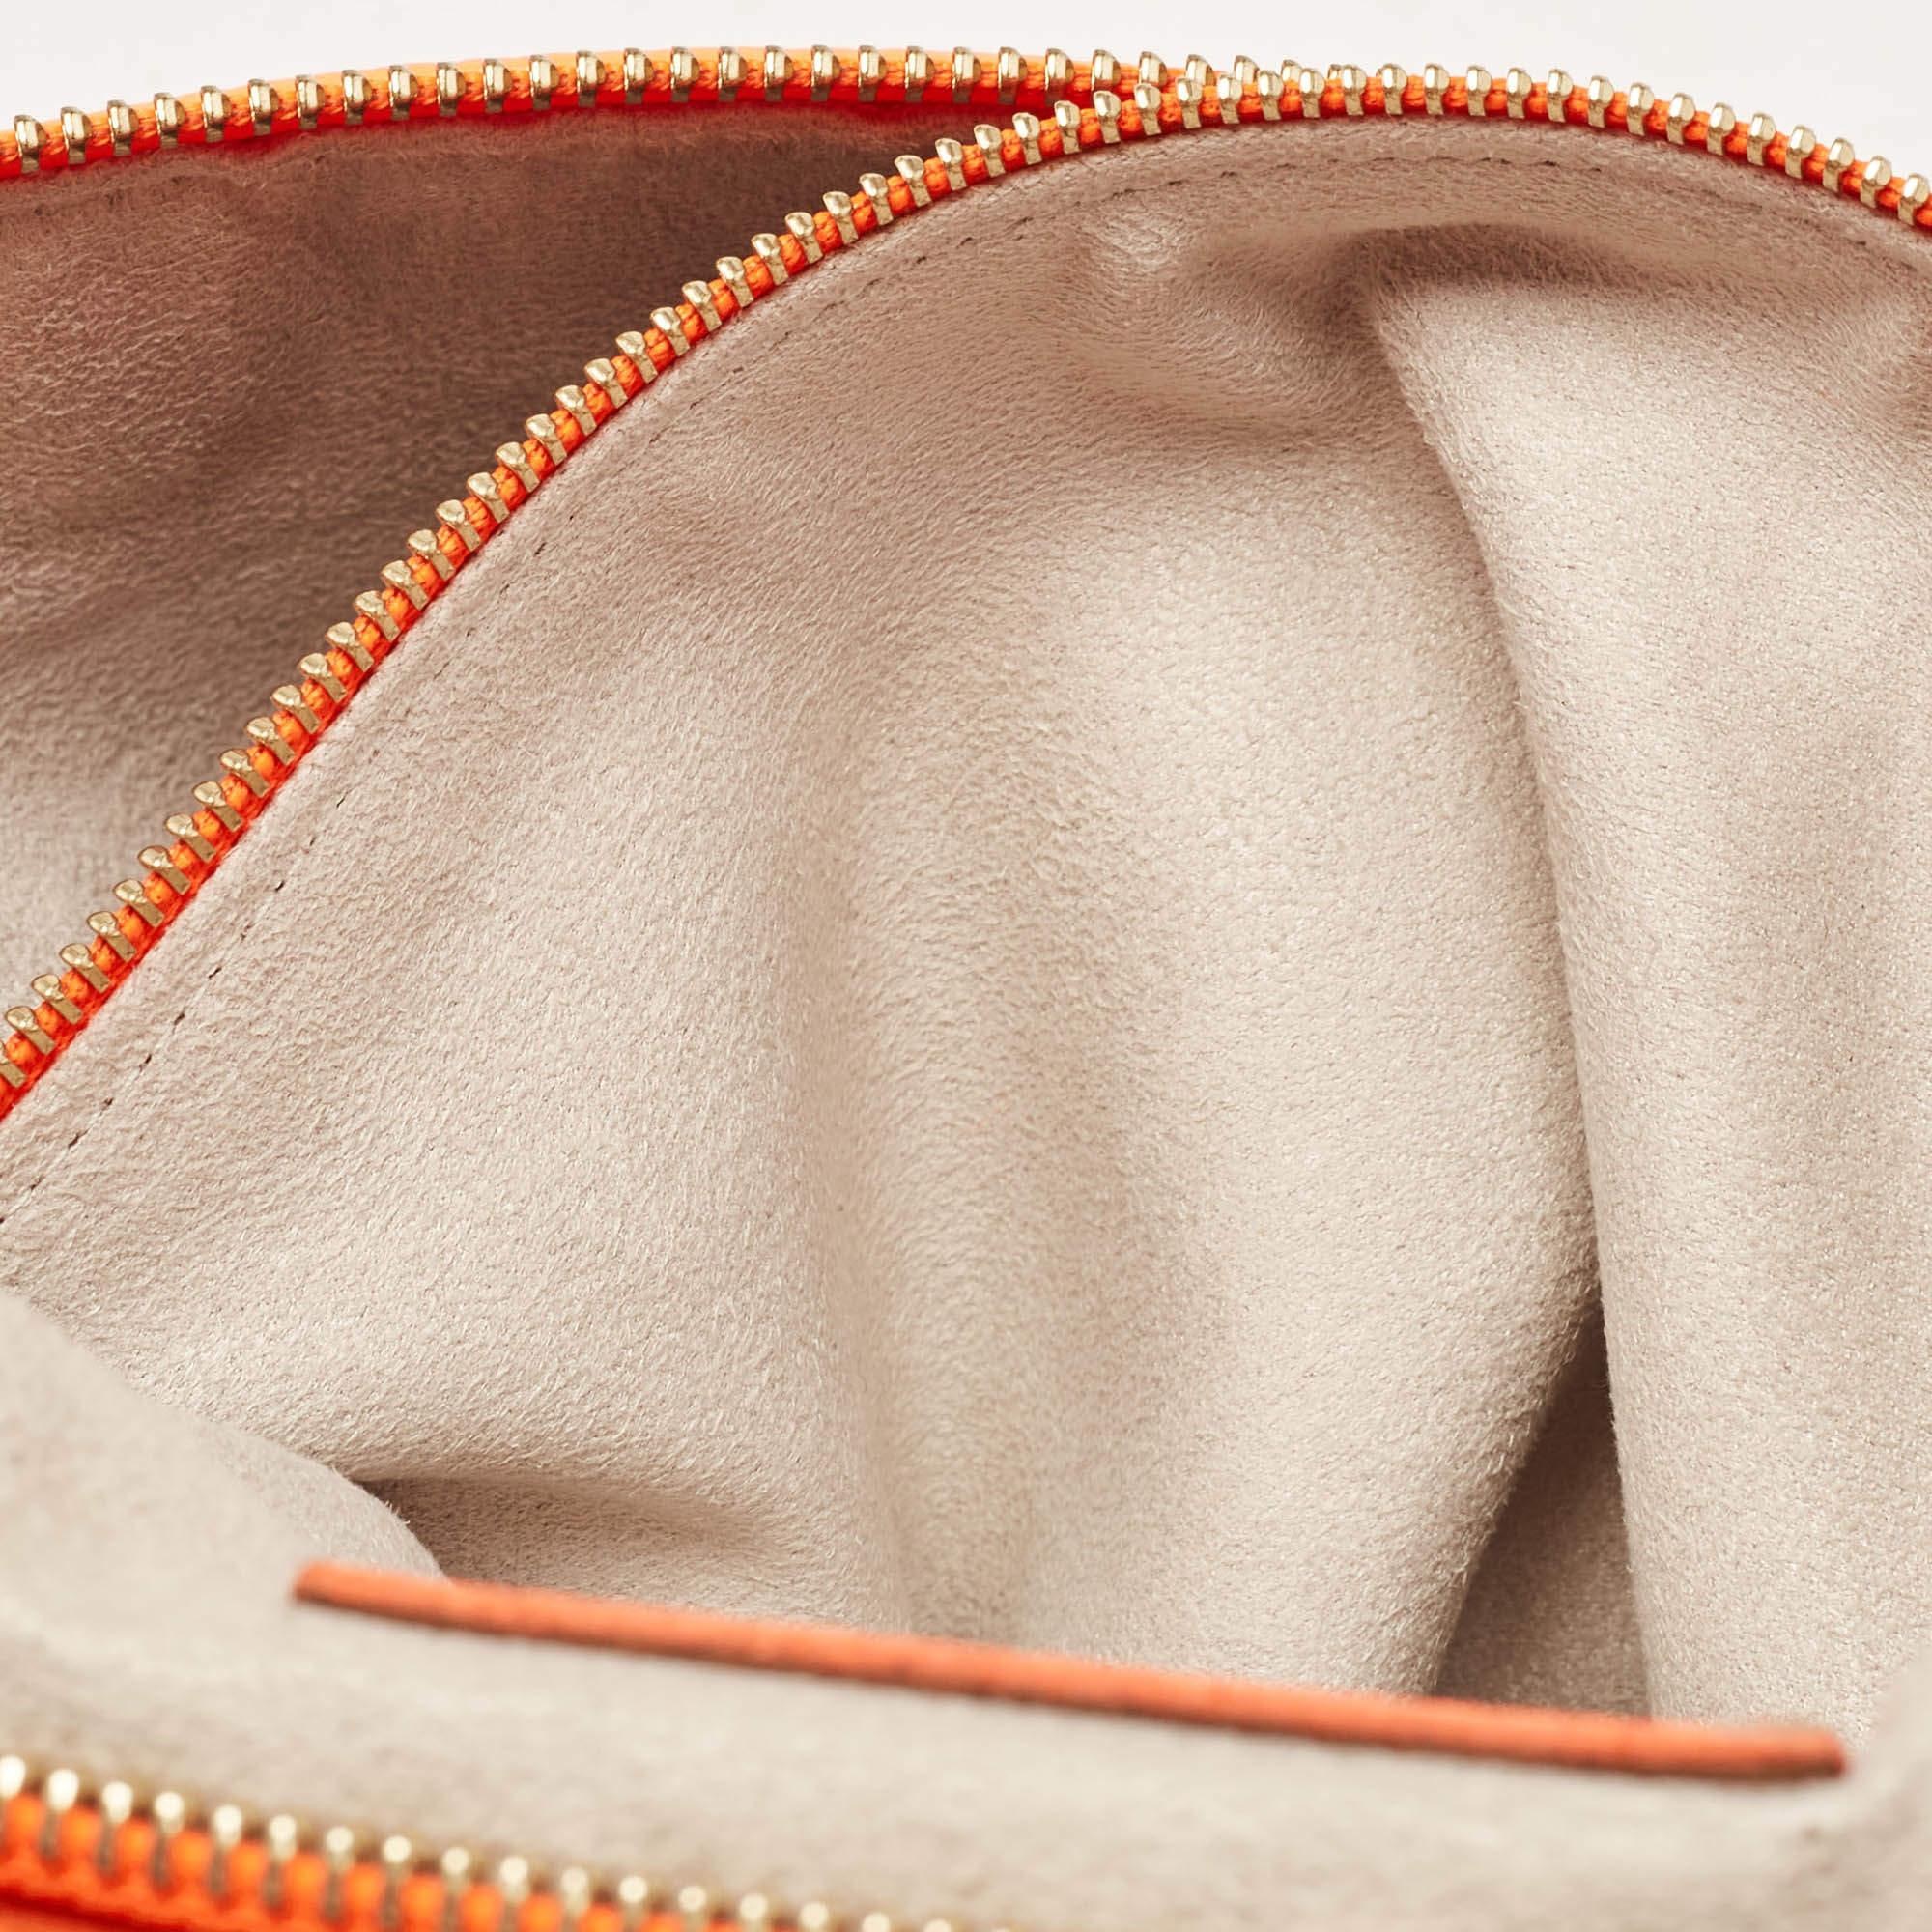 Jimmy Choo Neon Orange Leather Flap Shoulder Bag For Sale 13